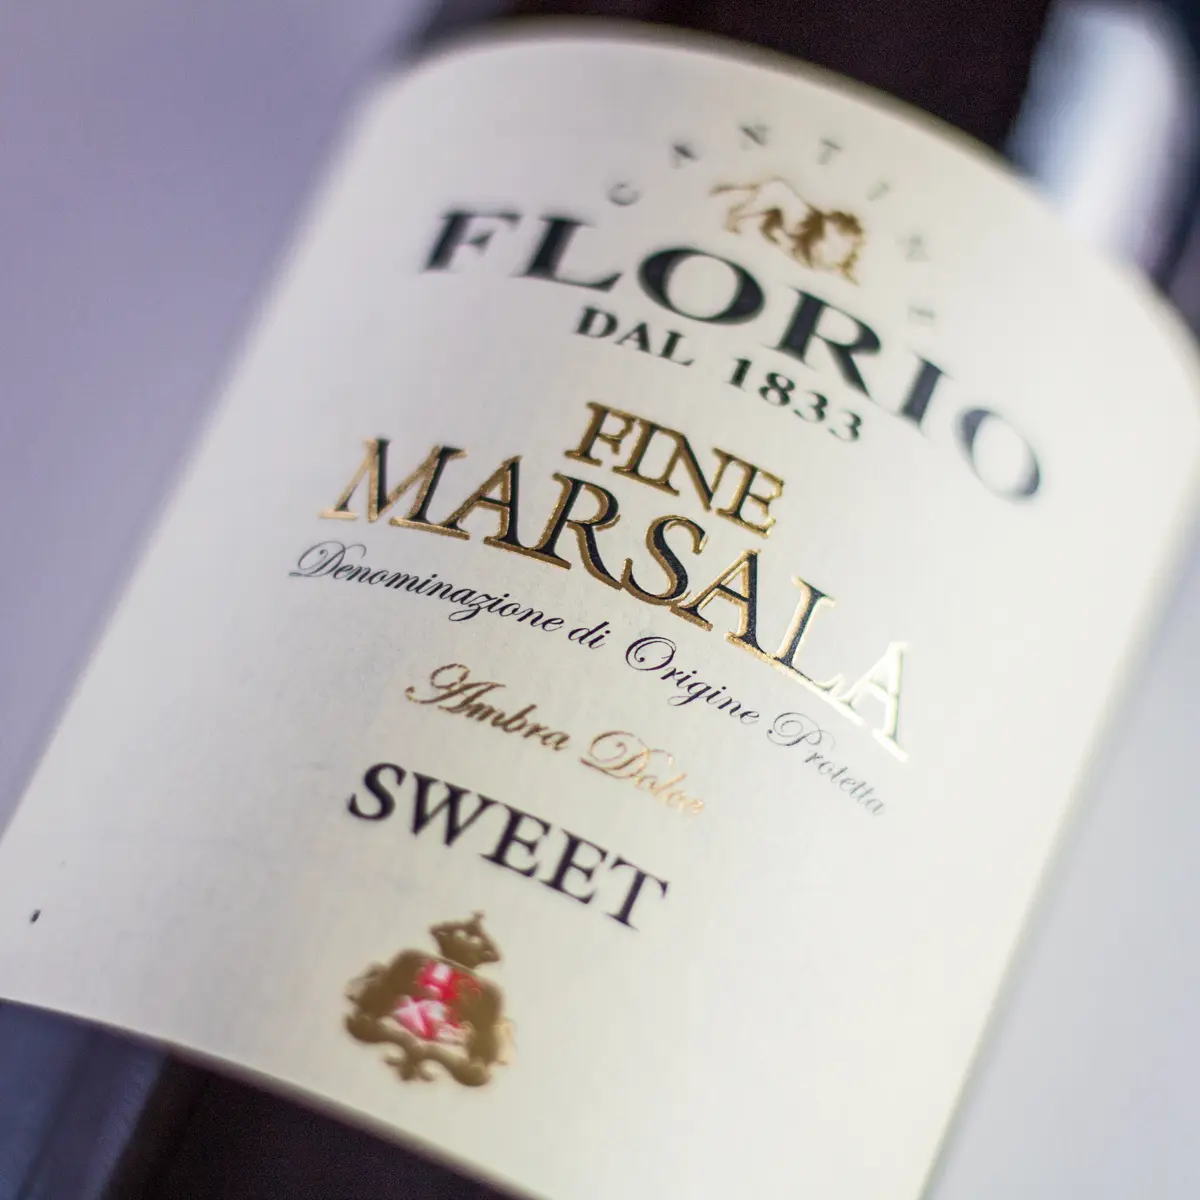 Grote vierkante Marsala Wine Substitute afbeelding met flesetiket.